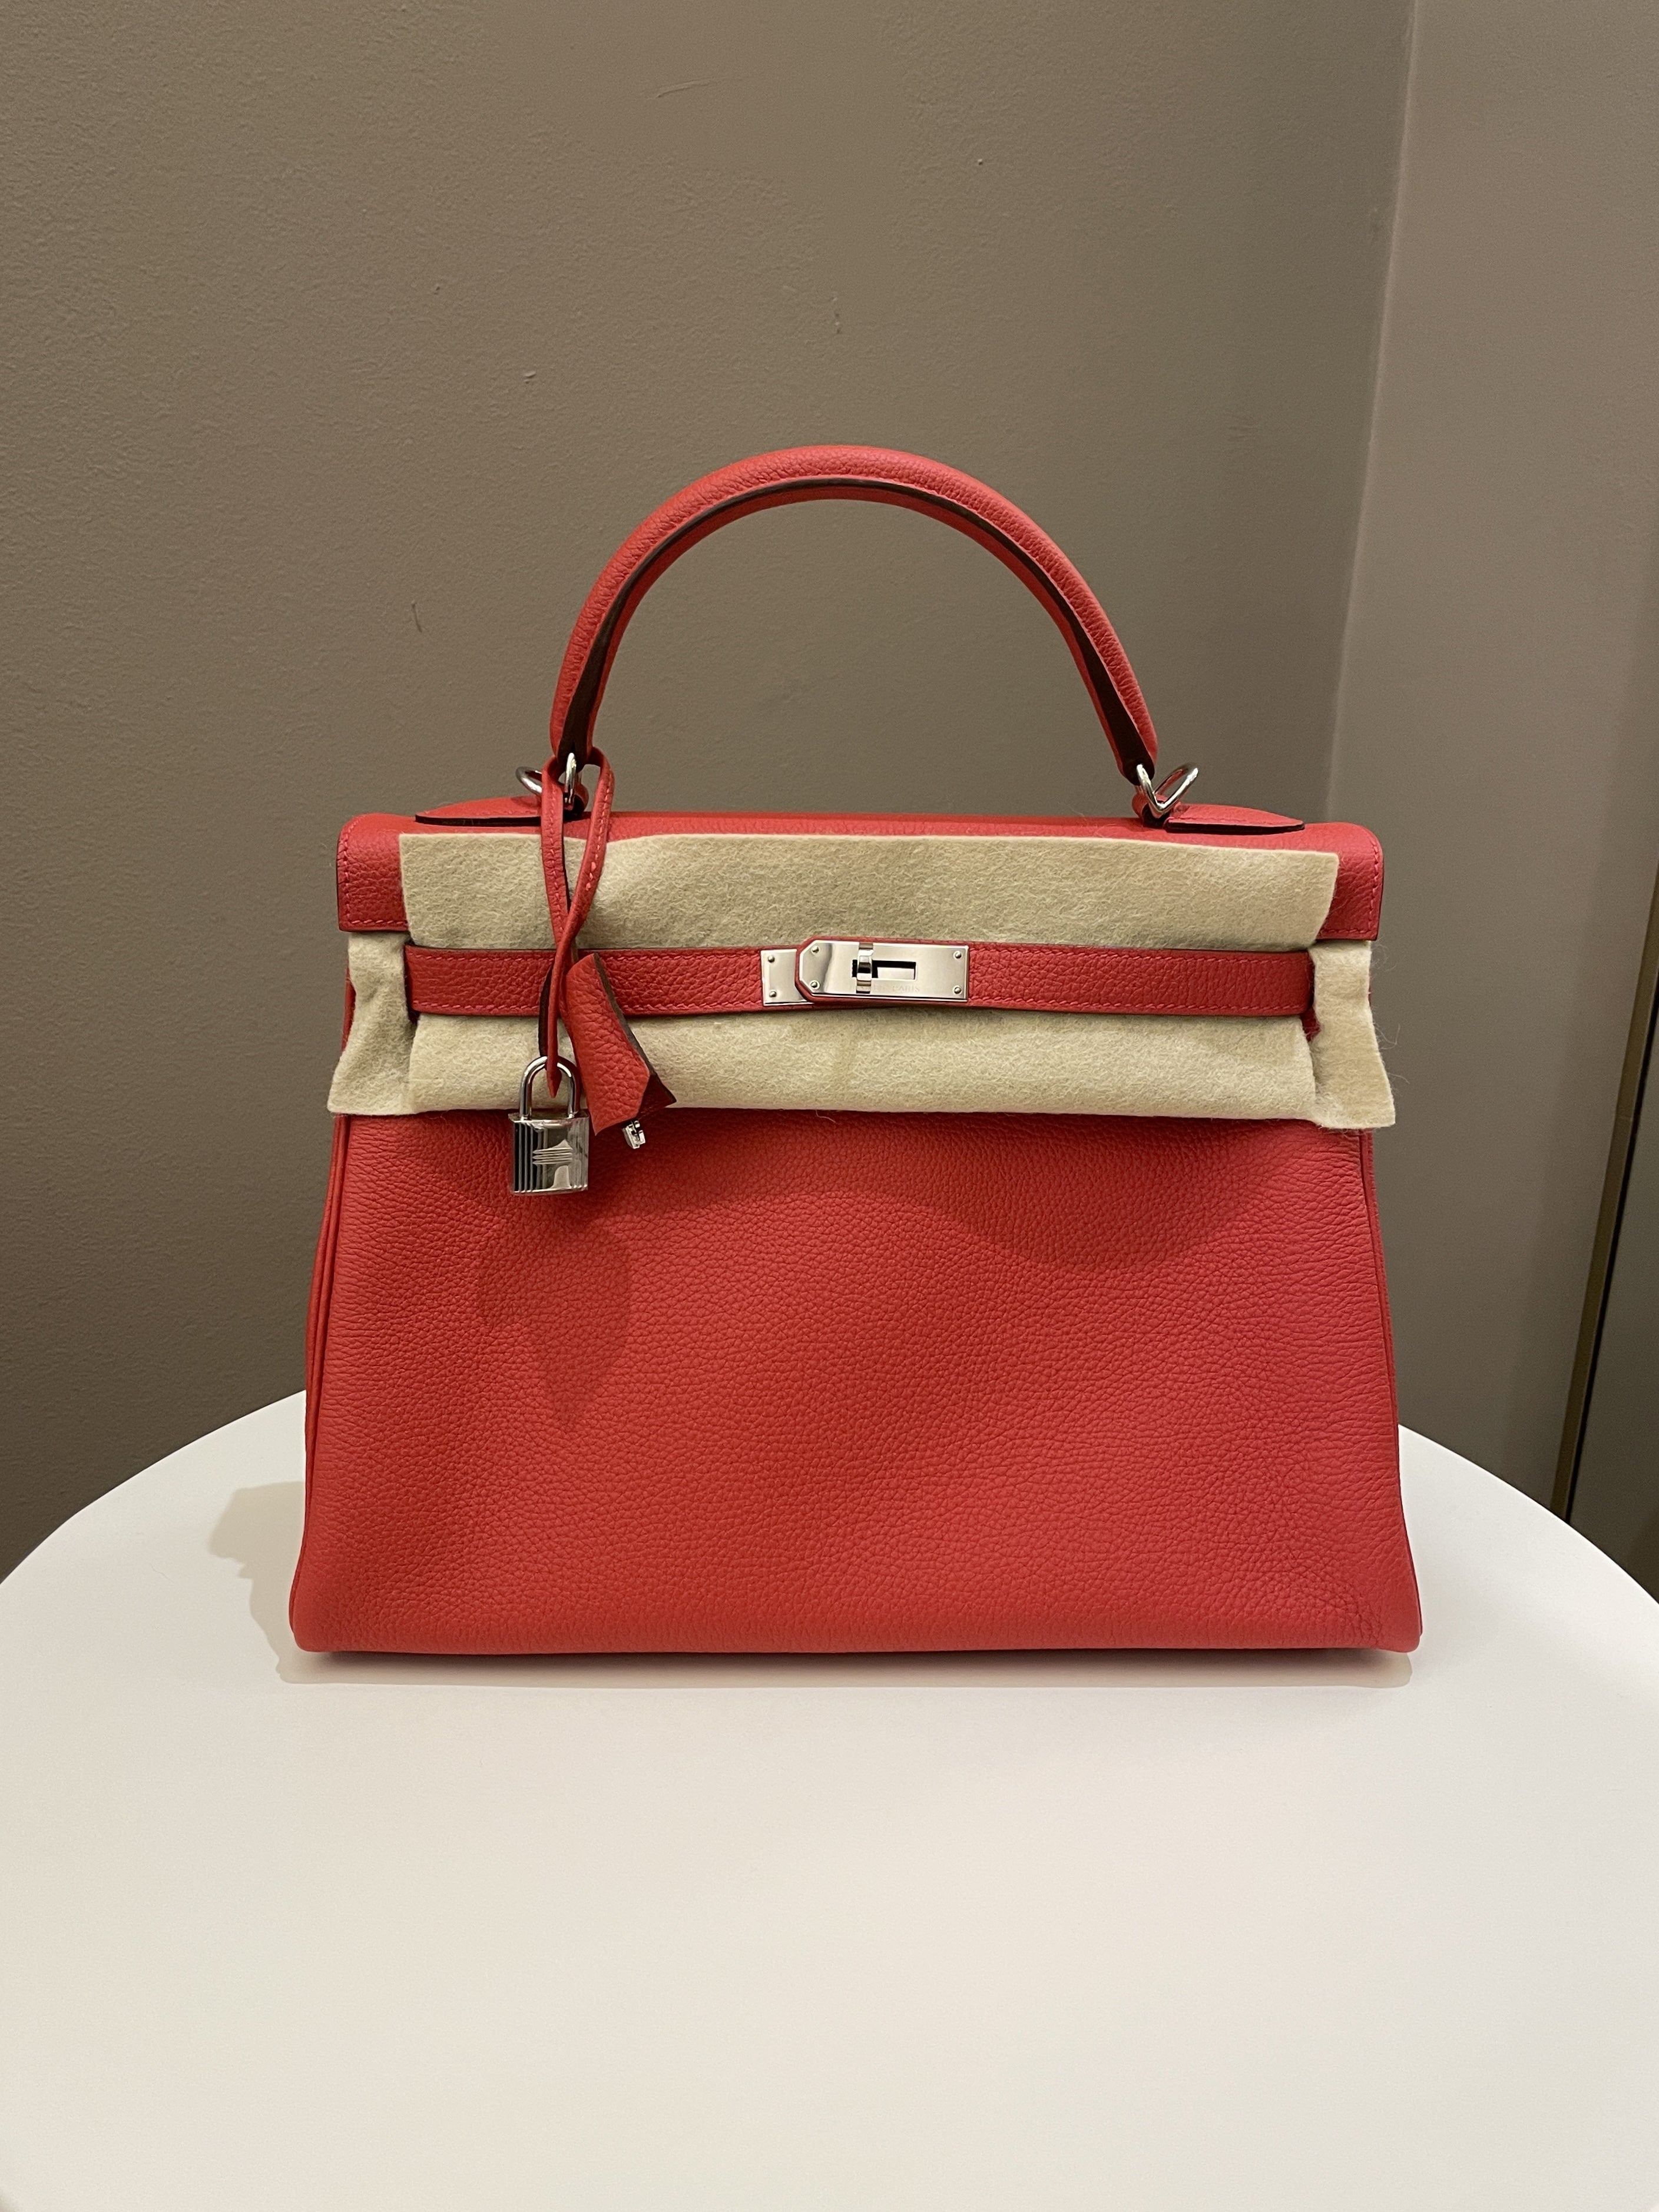 Hermes Kelly Handbag Rouge Pivoine Togo with Gold Hardware 28 Red